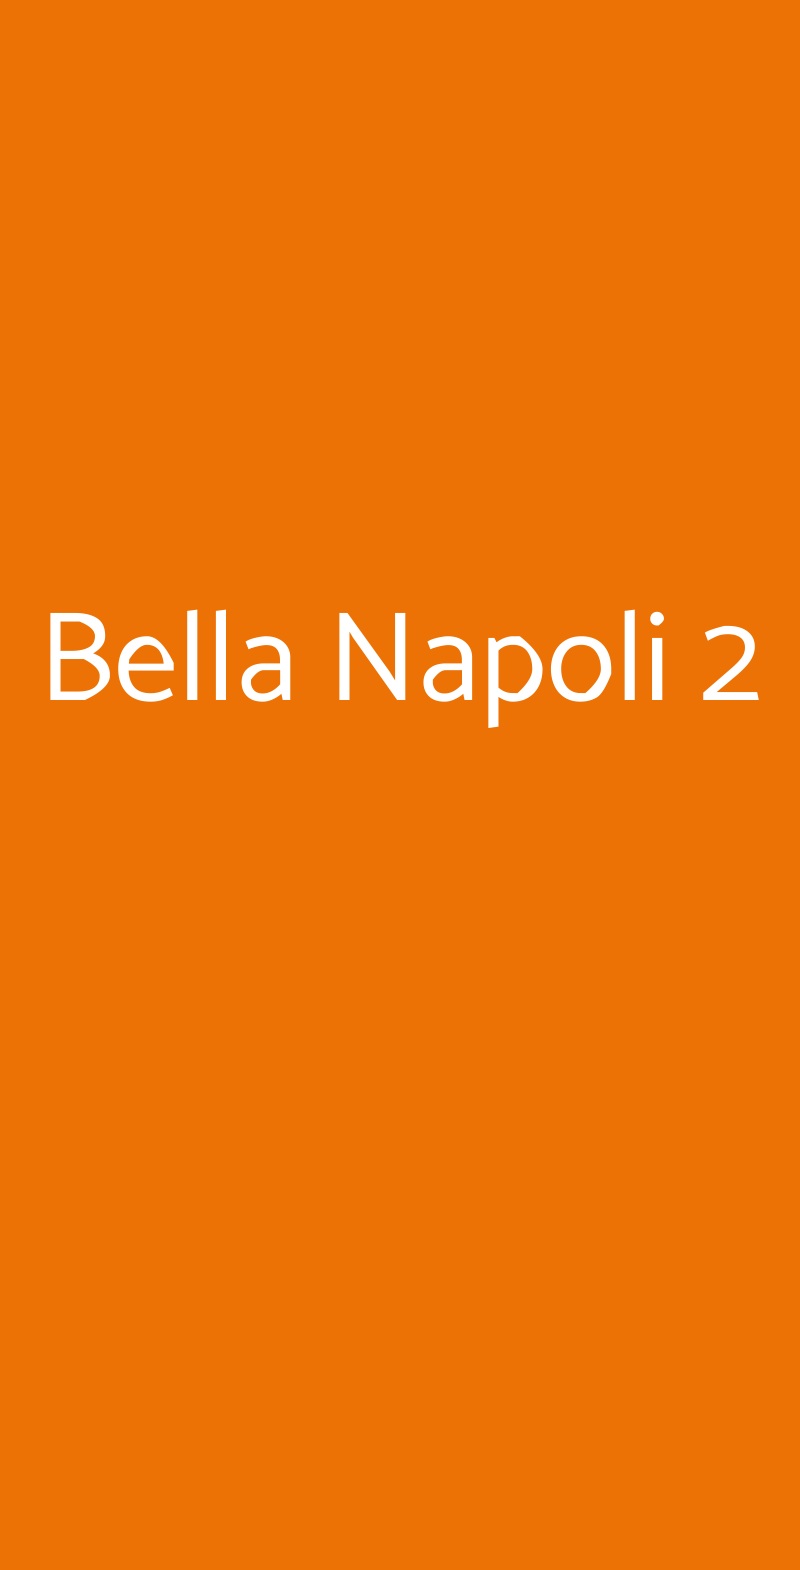 Bella Napoli 2 Roma menù 1 pagina